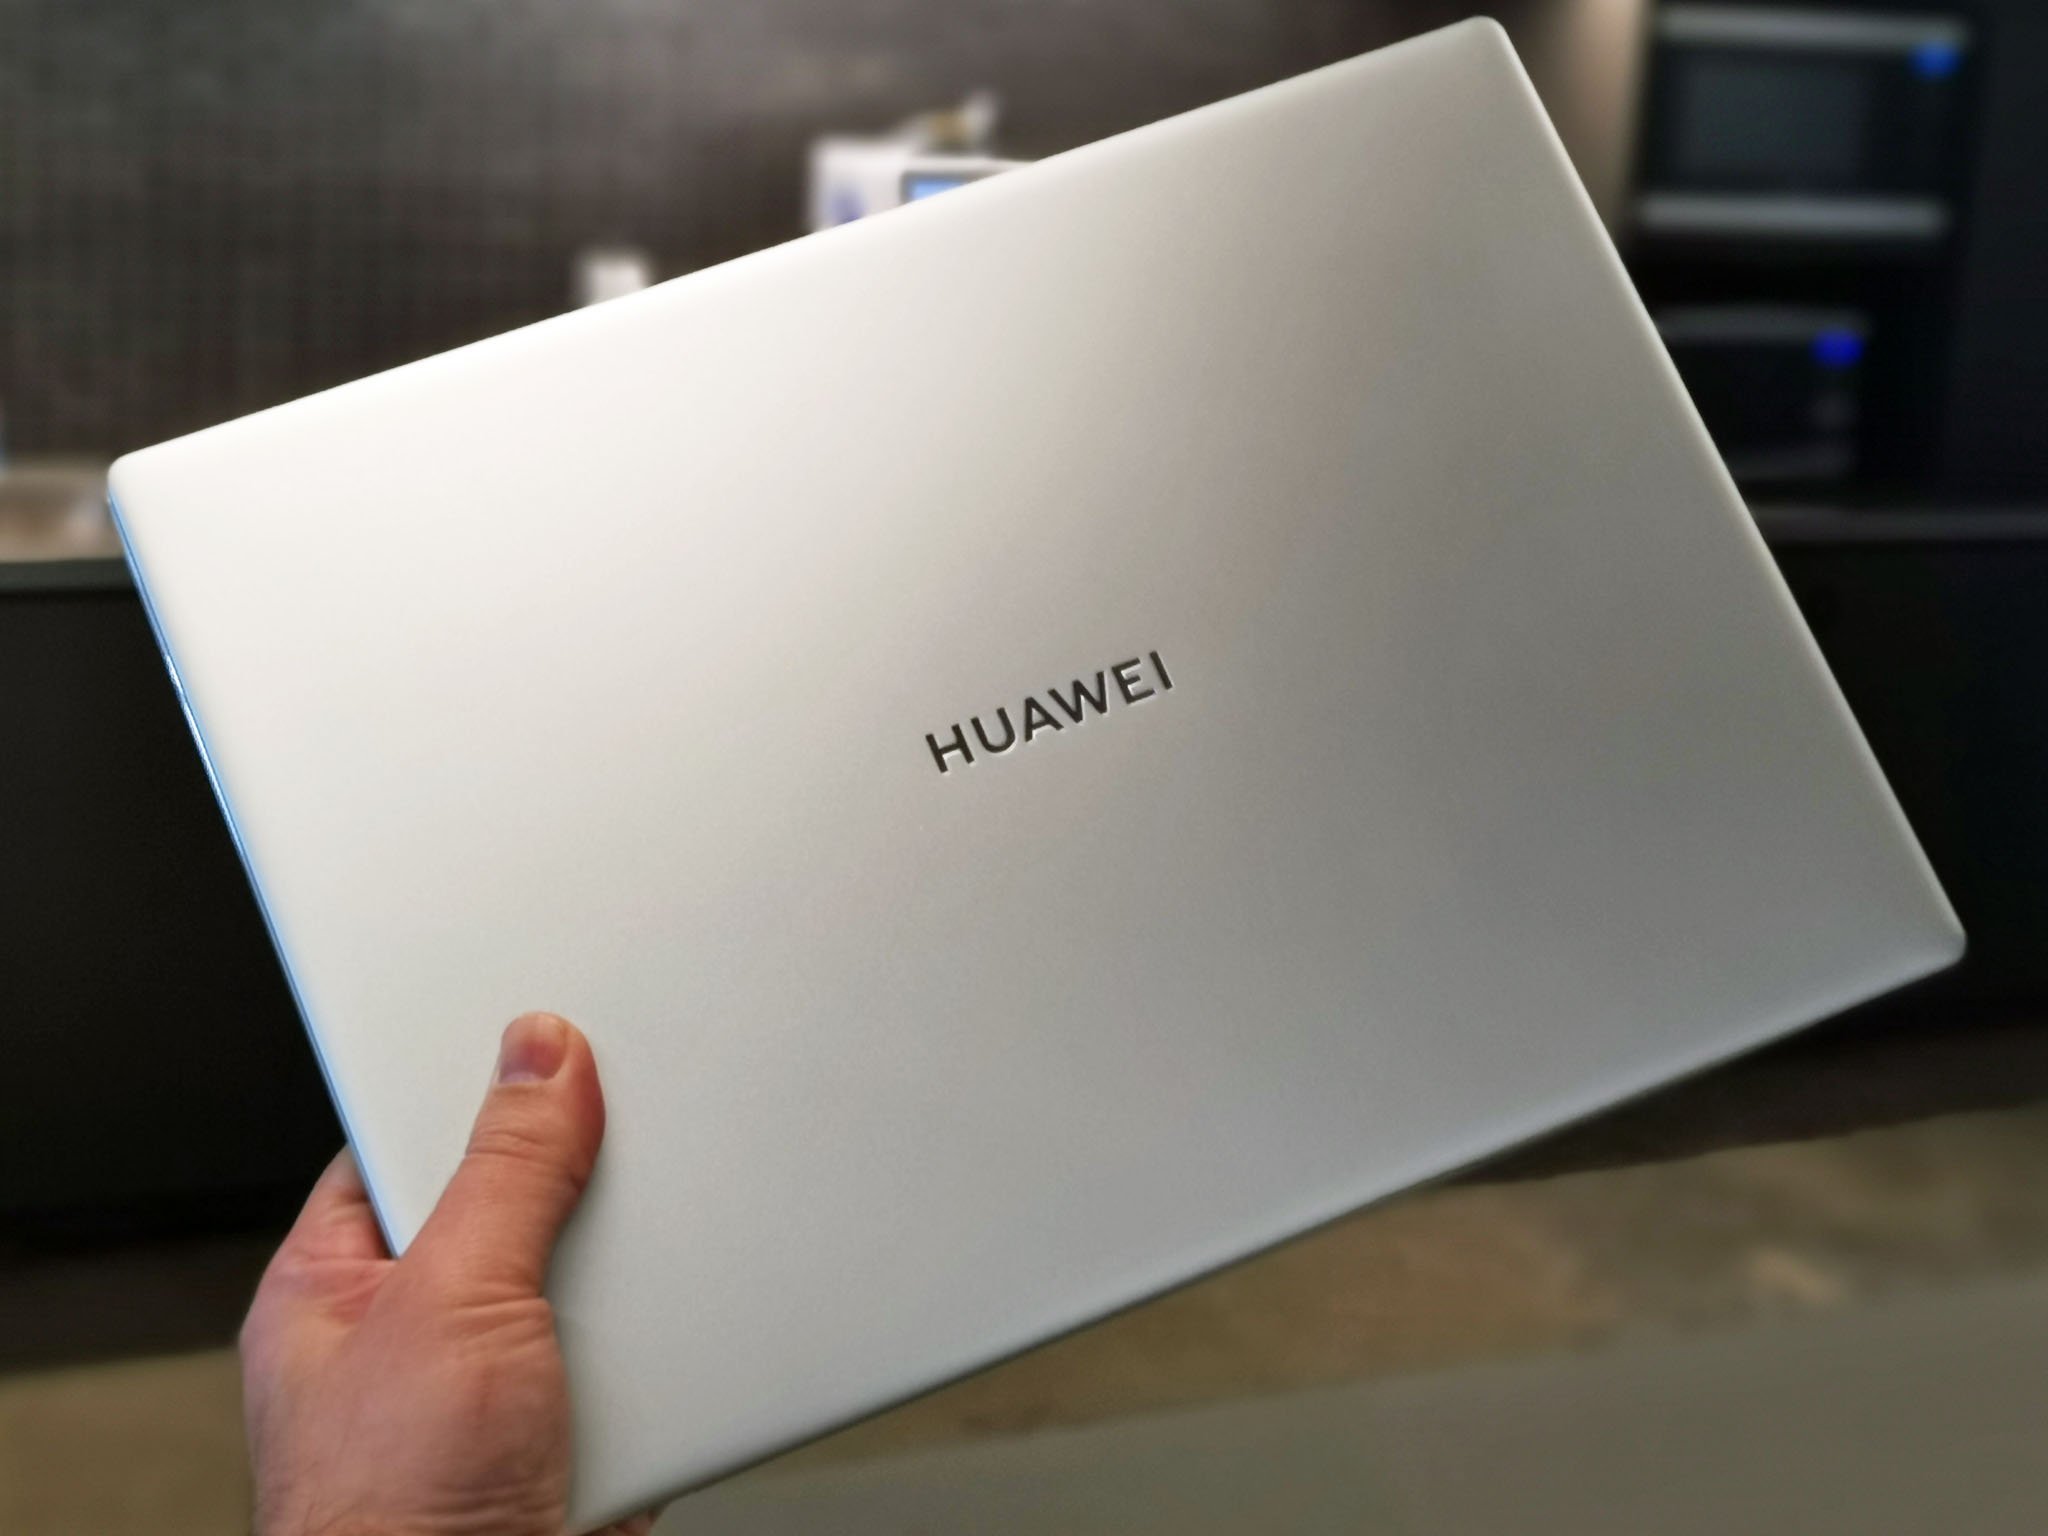 huawei-new-logo-2019-laptop.jpg